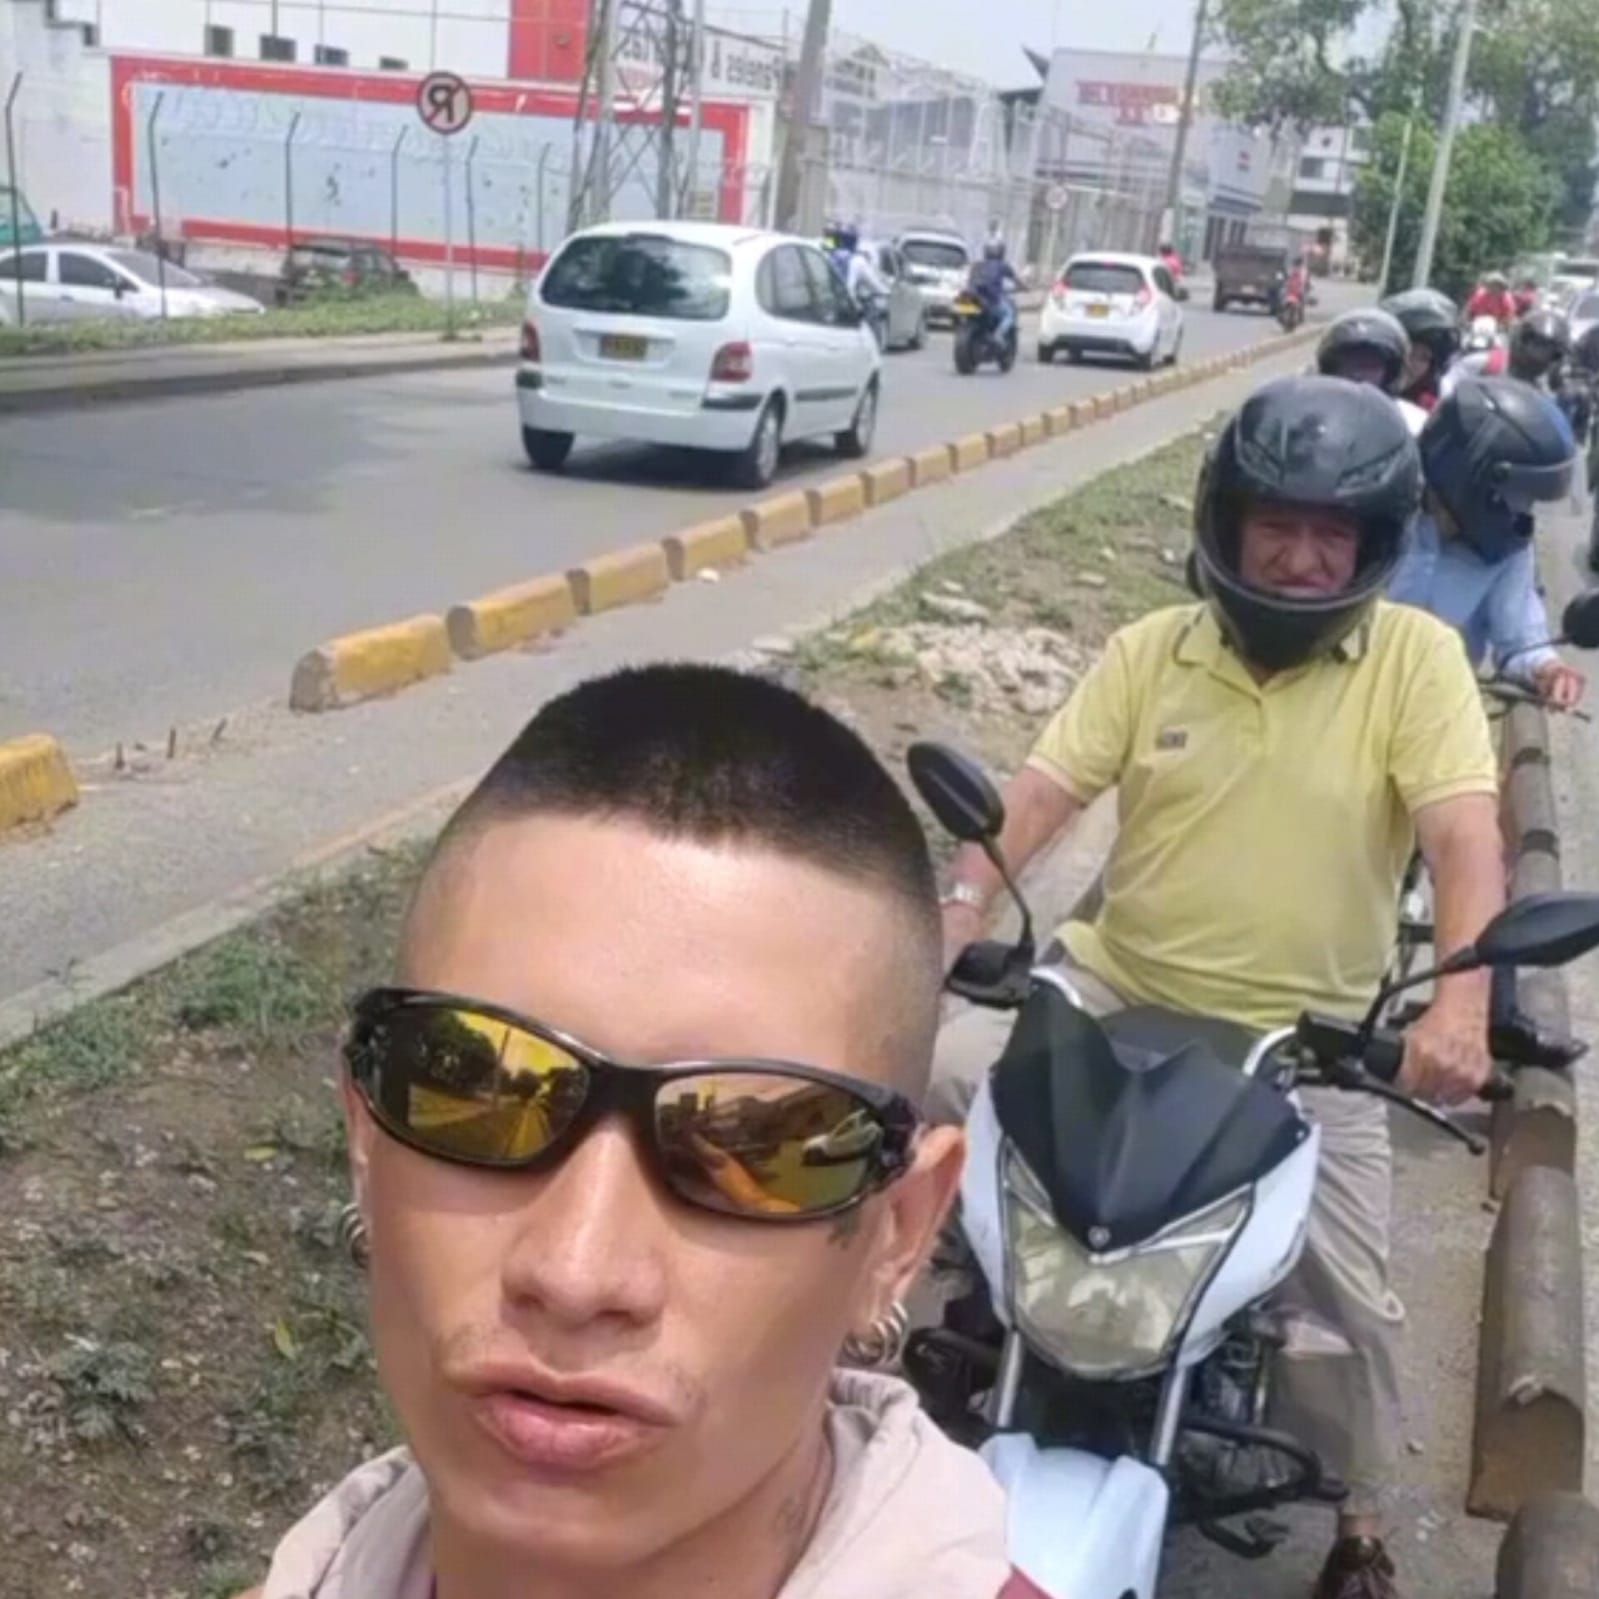 [Video] Ciclista ‘Bien ofendido’ hace respetar la ciclovía de motociclistas imprudentes